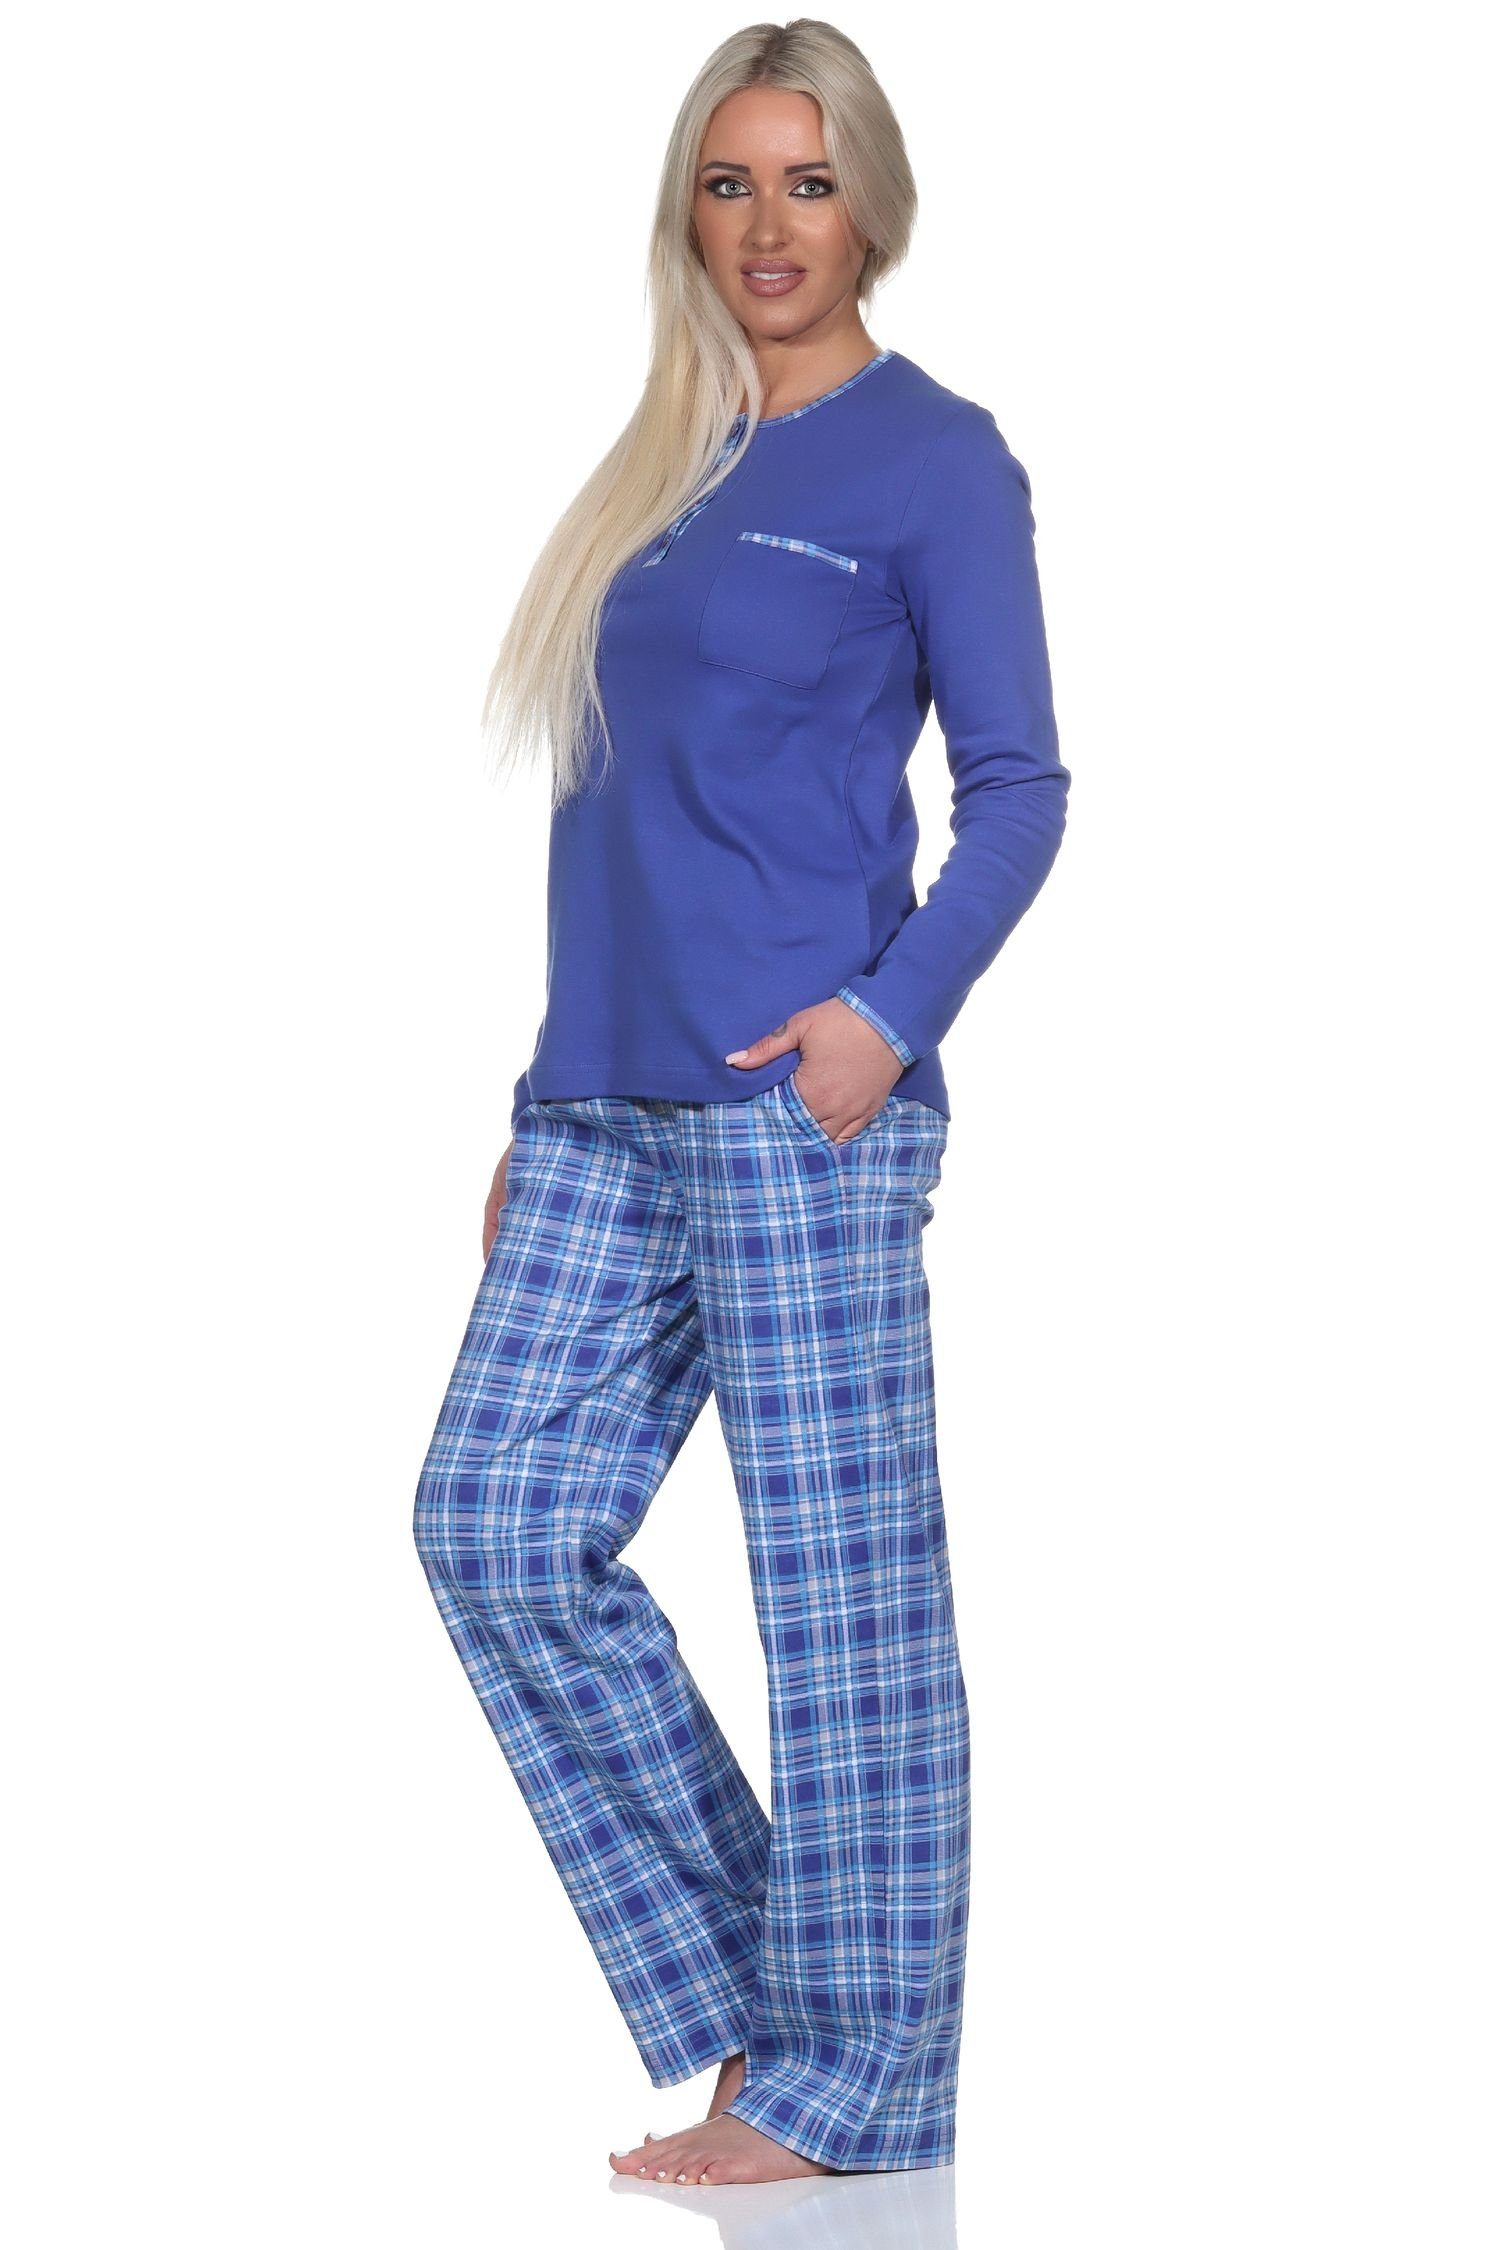 Hose Kuschel Pyjama Normann Damen Schlafanzug karierter in mit Qualität Interlock blau